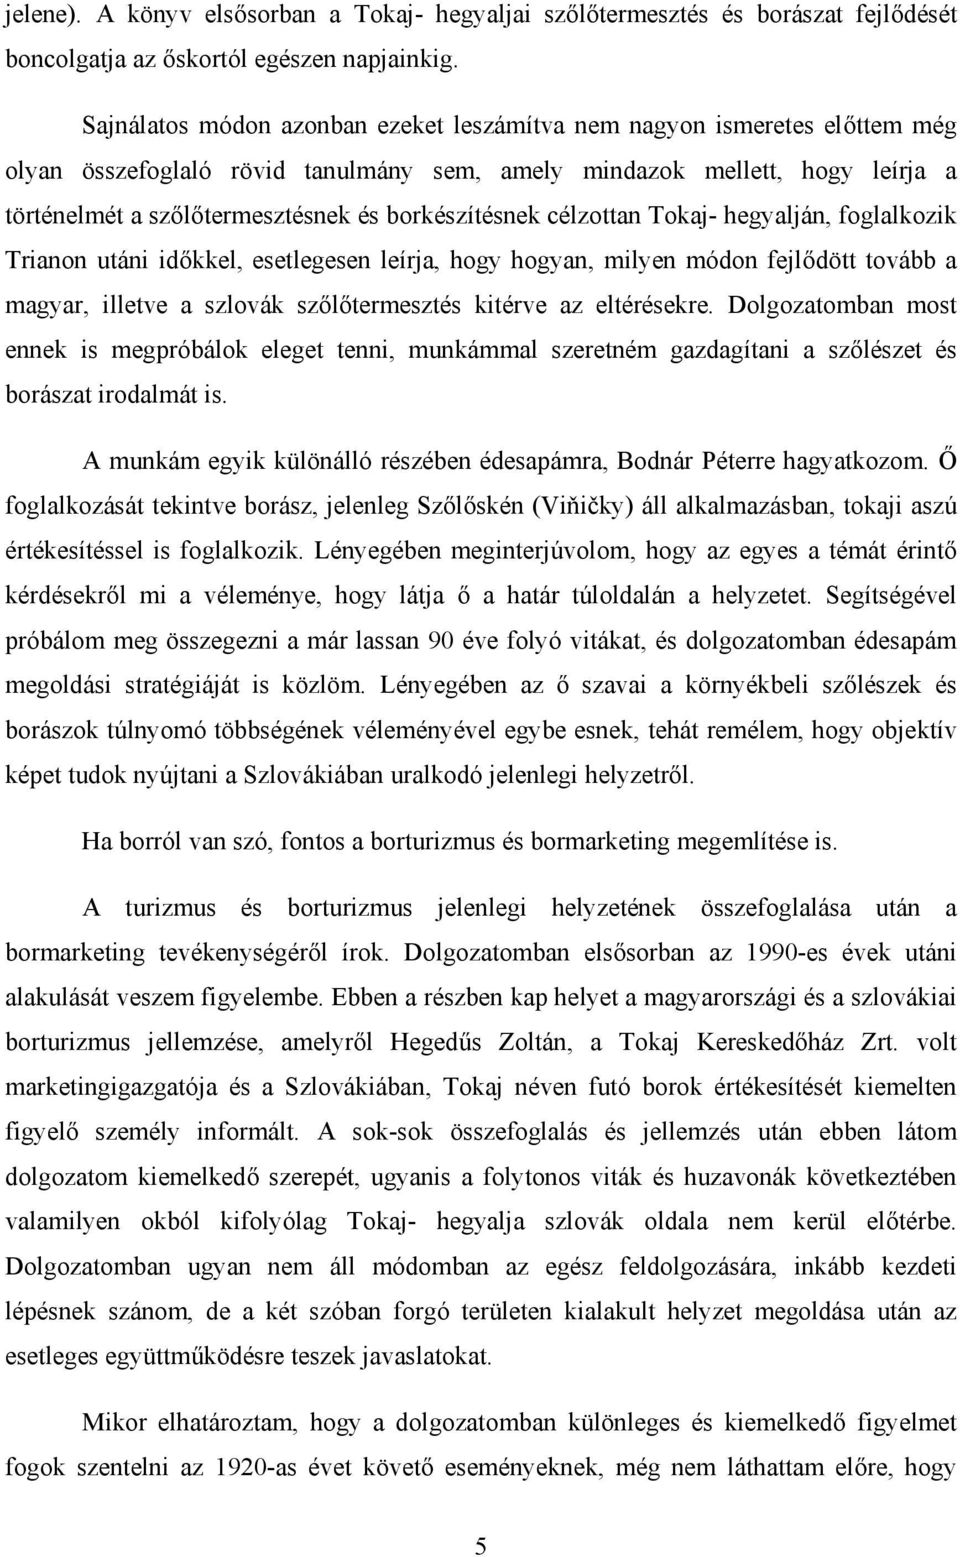 borkészítésnek célzottan Tokaj- hegyalján, foglalkozik Trianon utáni időkkel, esetlegesen leírja, hogy hogyan, milyen módon fejlődött tovább a magyar, illetve a szlovák szőlőtermesztés kitérve az